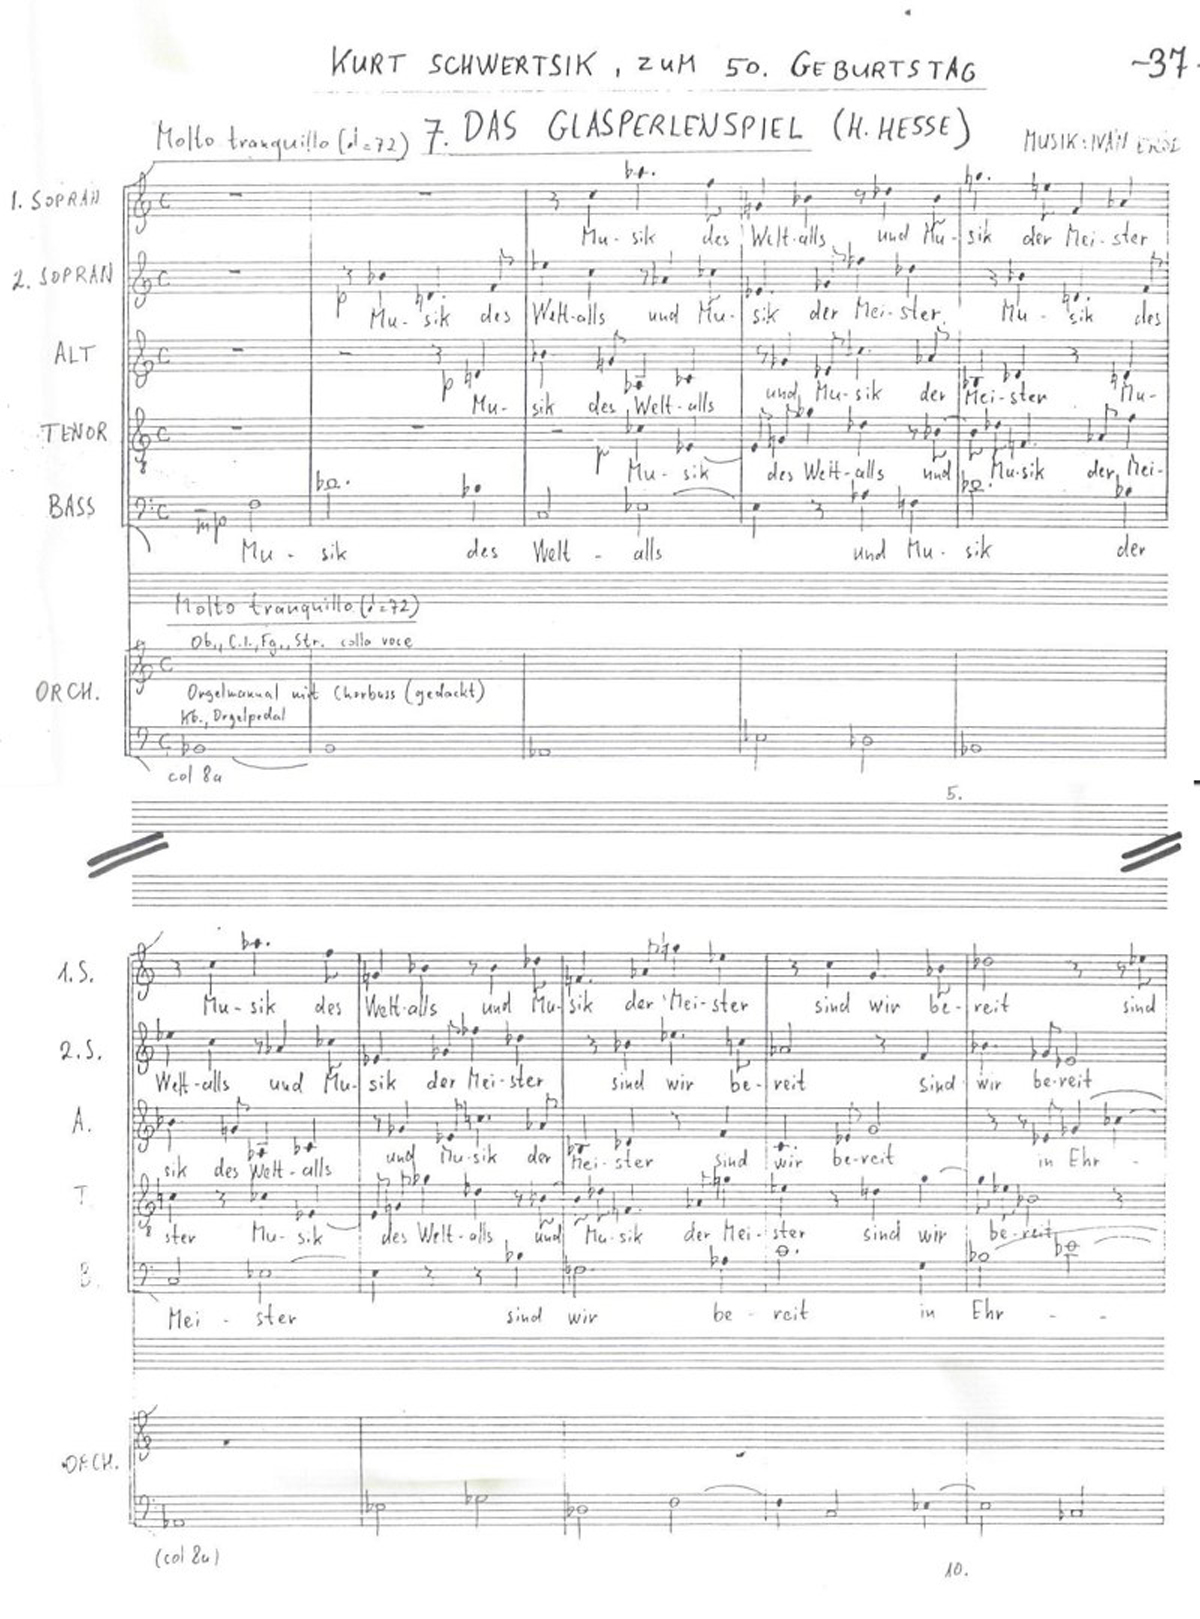 Ivan Eröd, Manuskript – Das Sein ist ewig Op. 50 / © Musikverlag Doblinger, abgebildet mit freundicher Genehmigung des Verlages